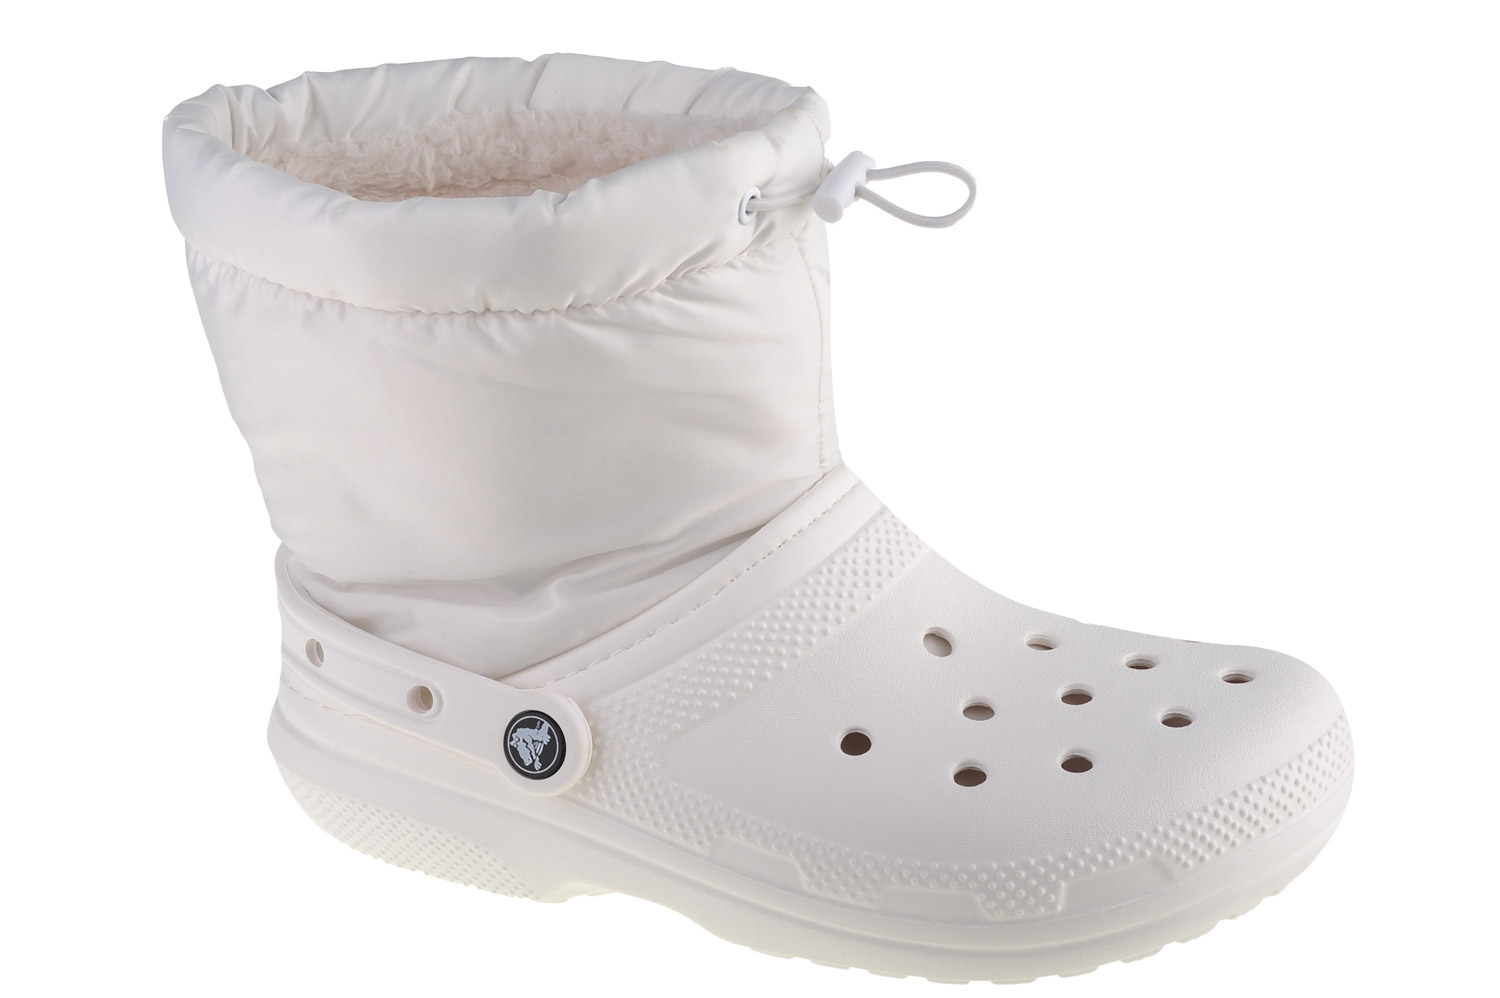 Ботинки Crocs Crocs Classic Lined Neo Puff Boot, белый ботинки classic lined neo puff boot crocs гранат